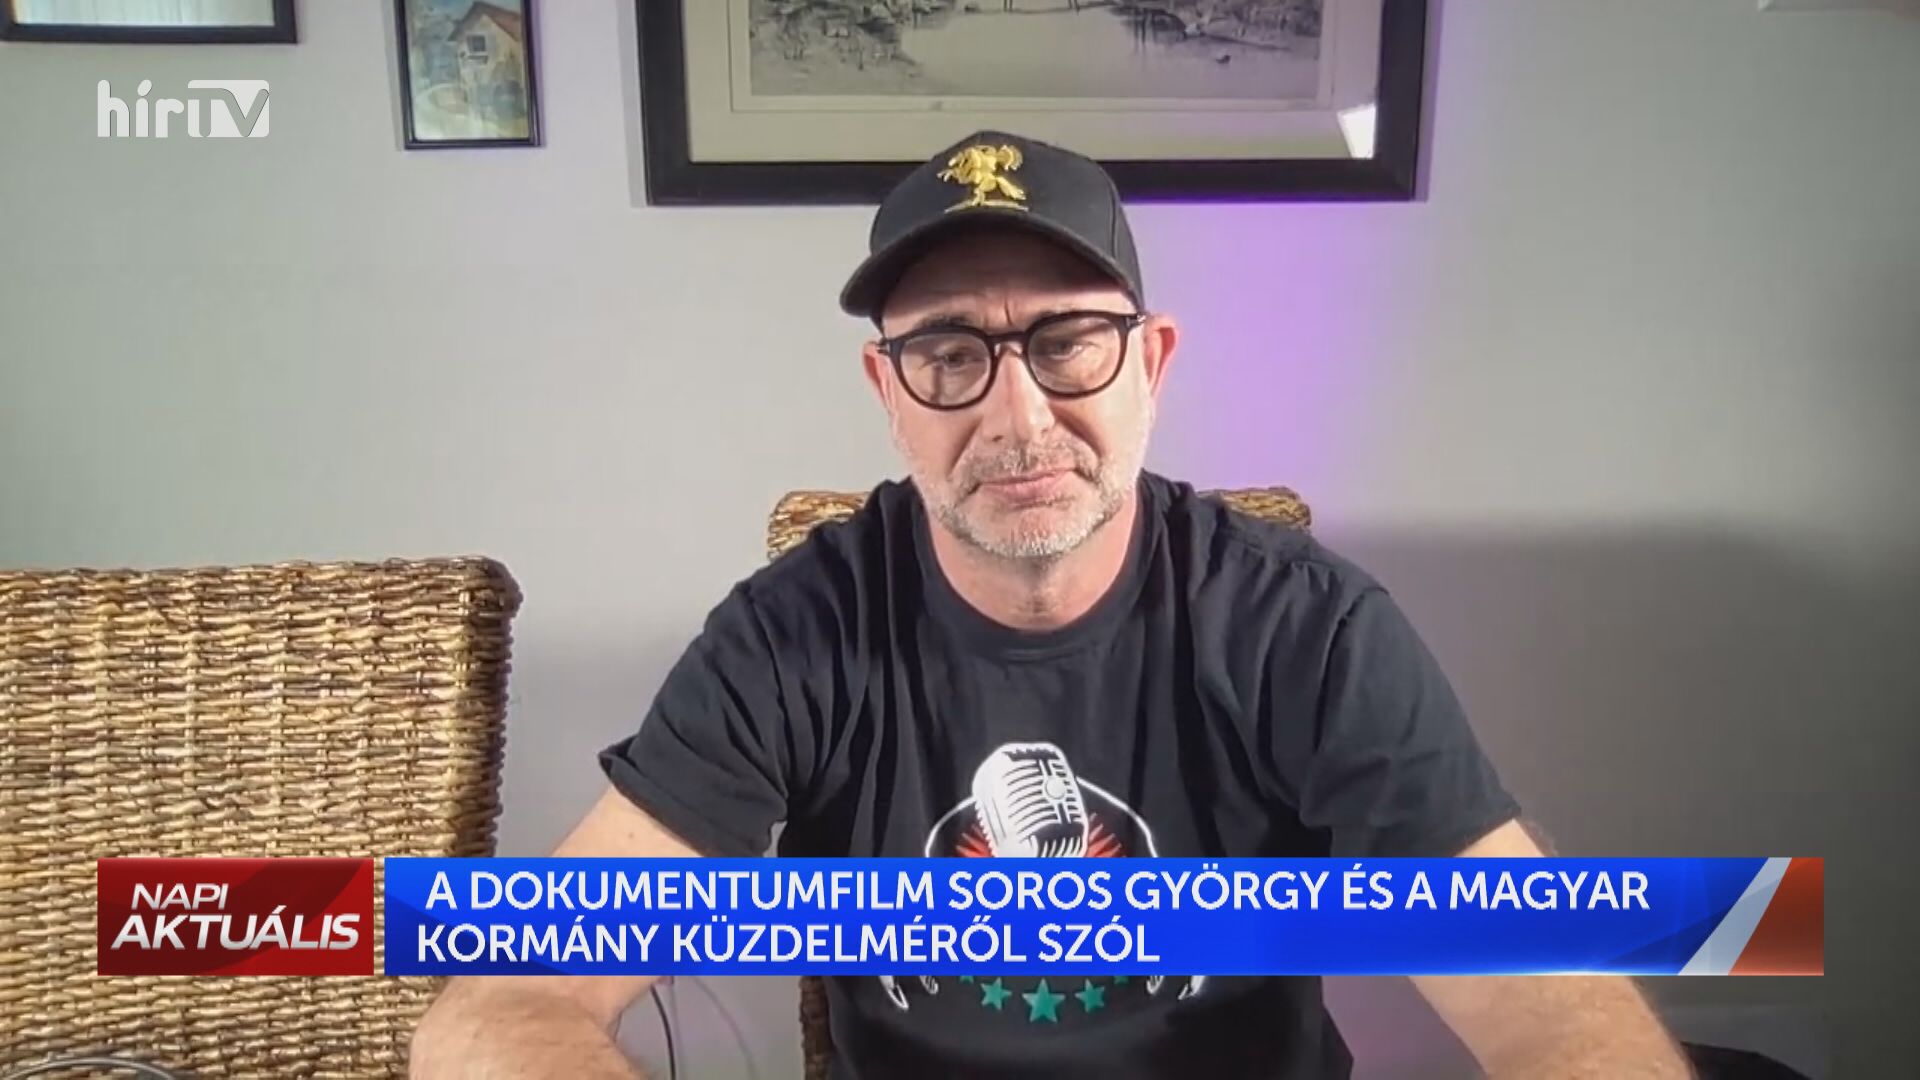 Kiss ”Sizare” Péter: Büszke vagyok rá, hogy megint Magyarországról beszélnek és büszke vagyok erre a kis filmre is